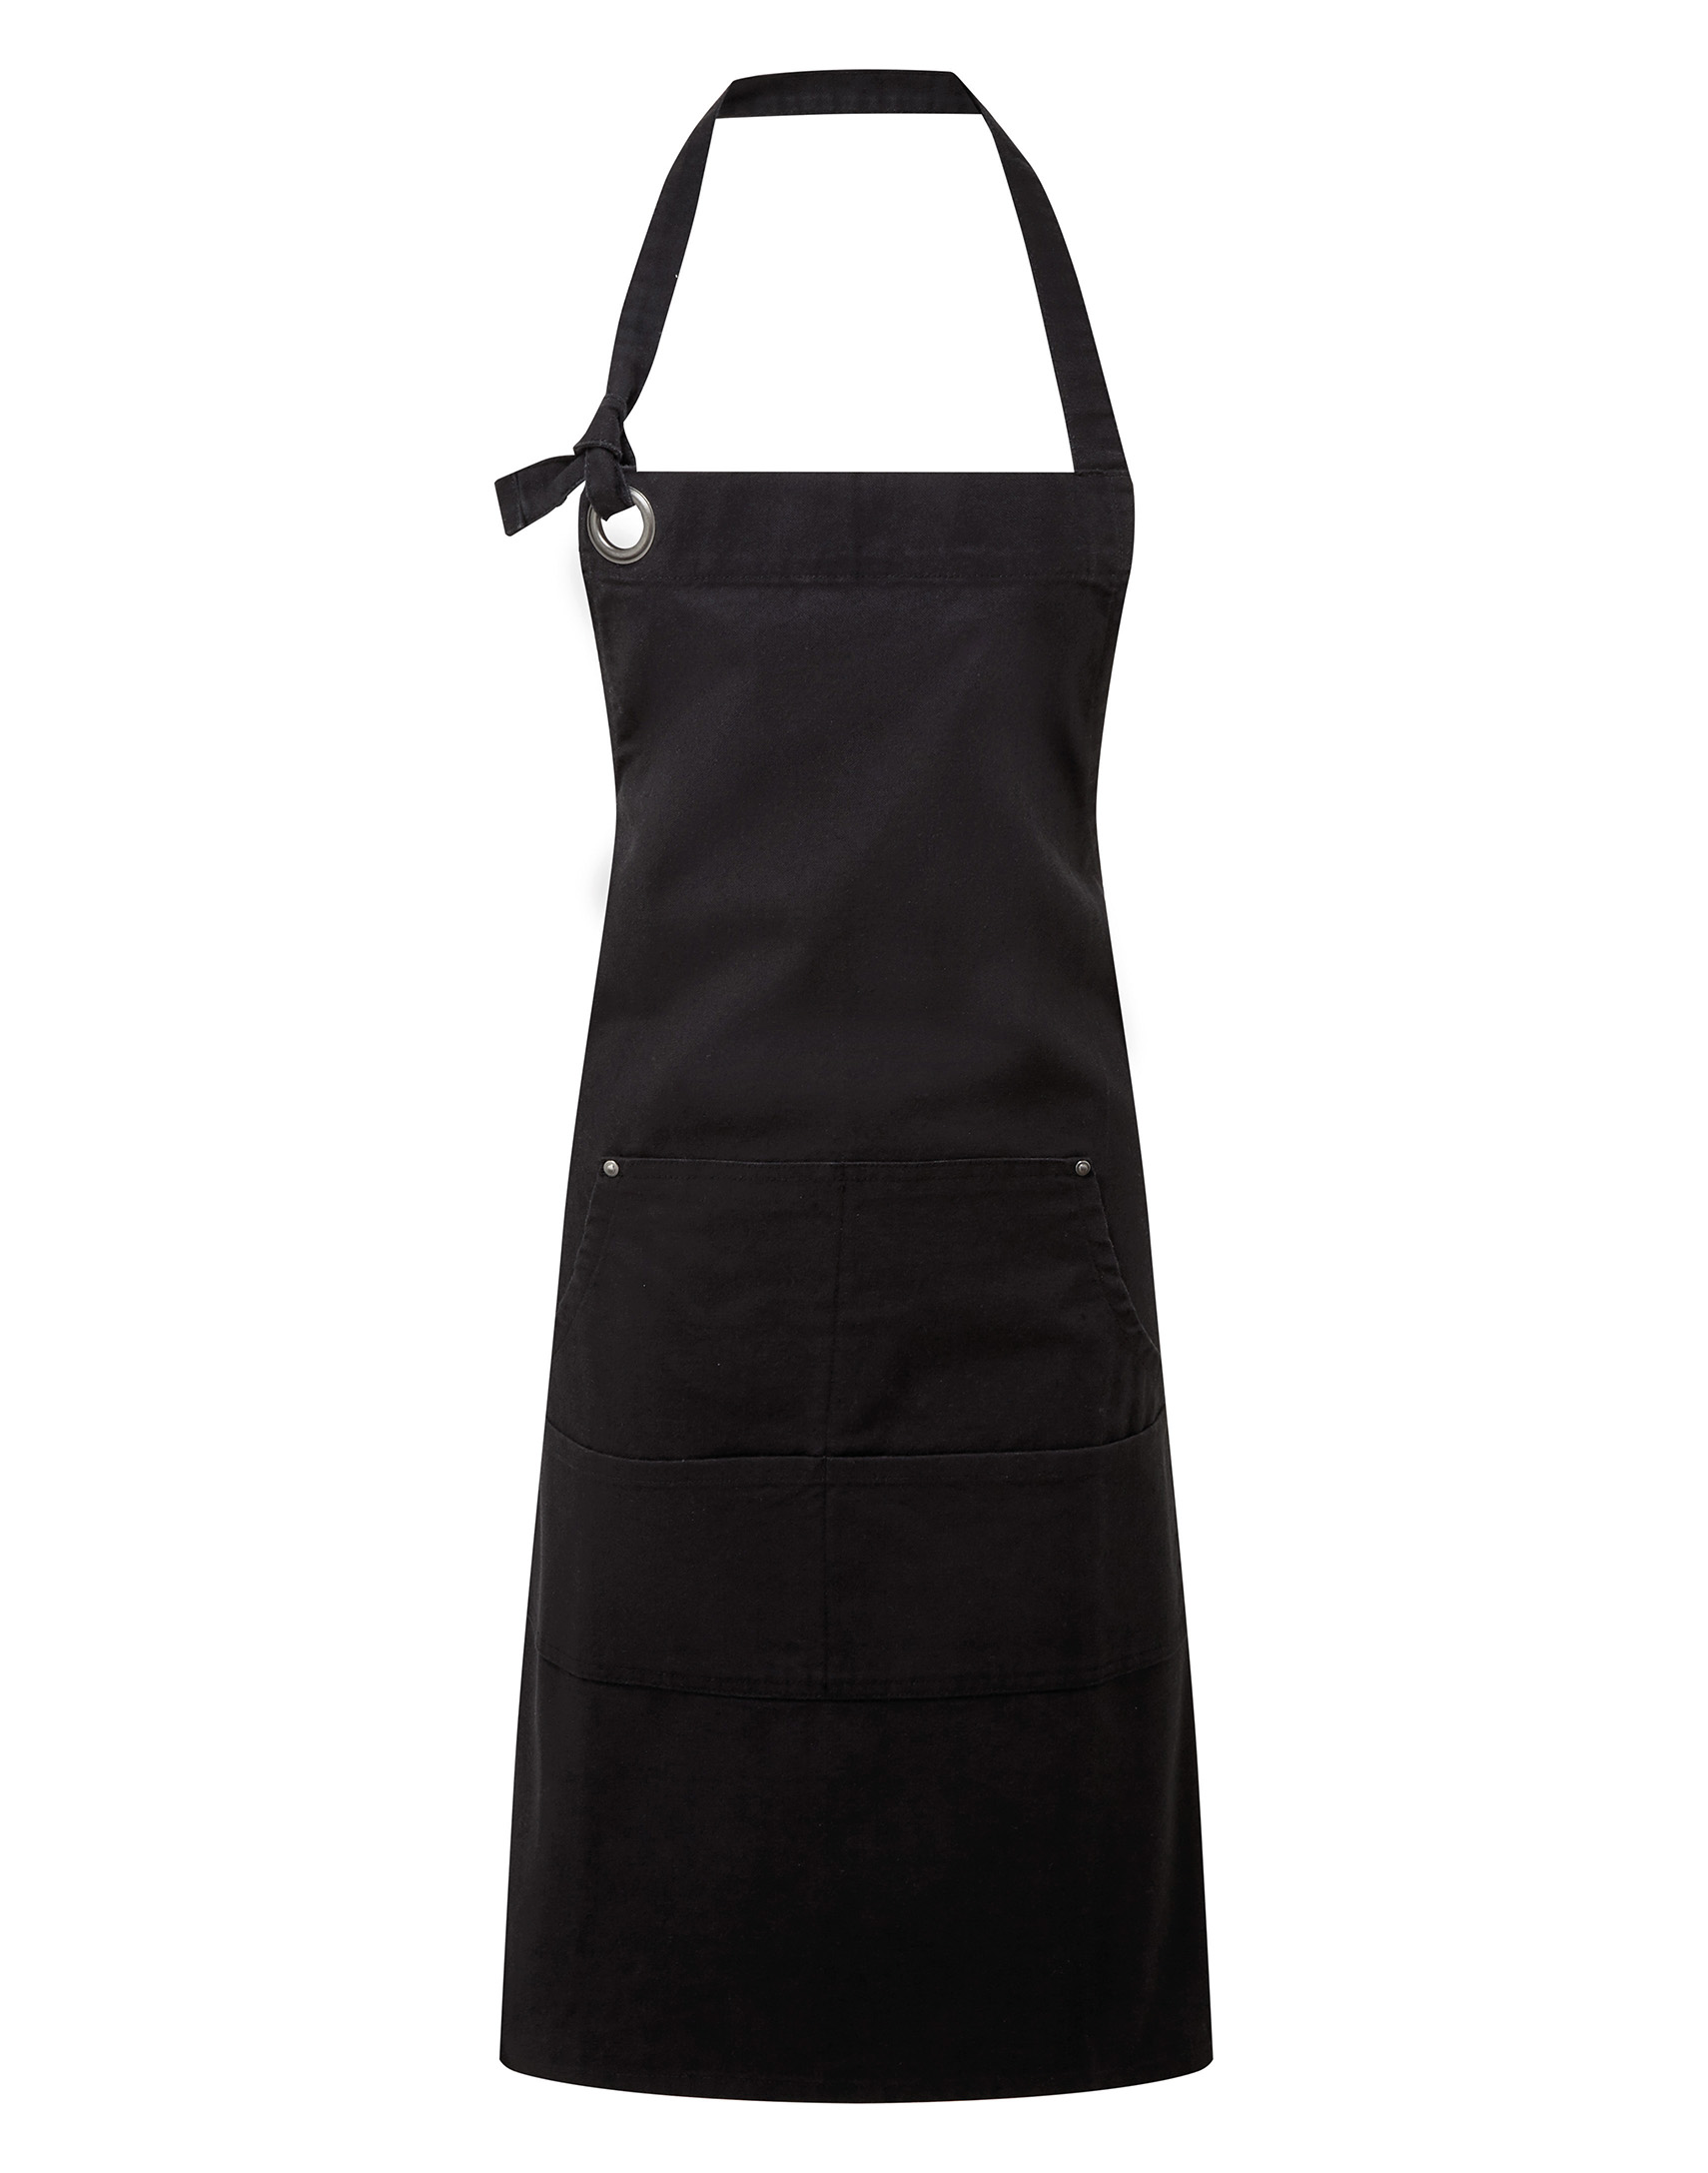 Calibre Taschenschürze aus Baumwoll-Canvas 72 x 86 cm Premier® Black